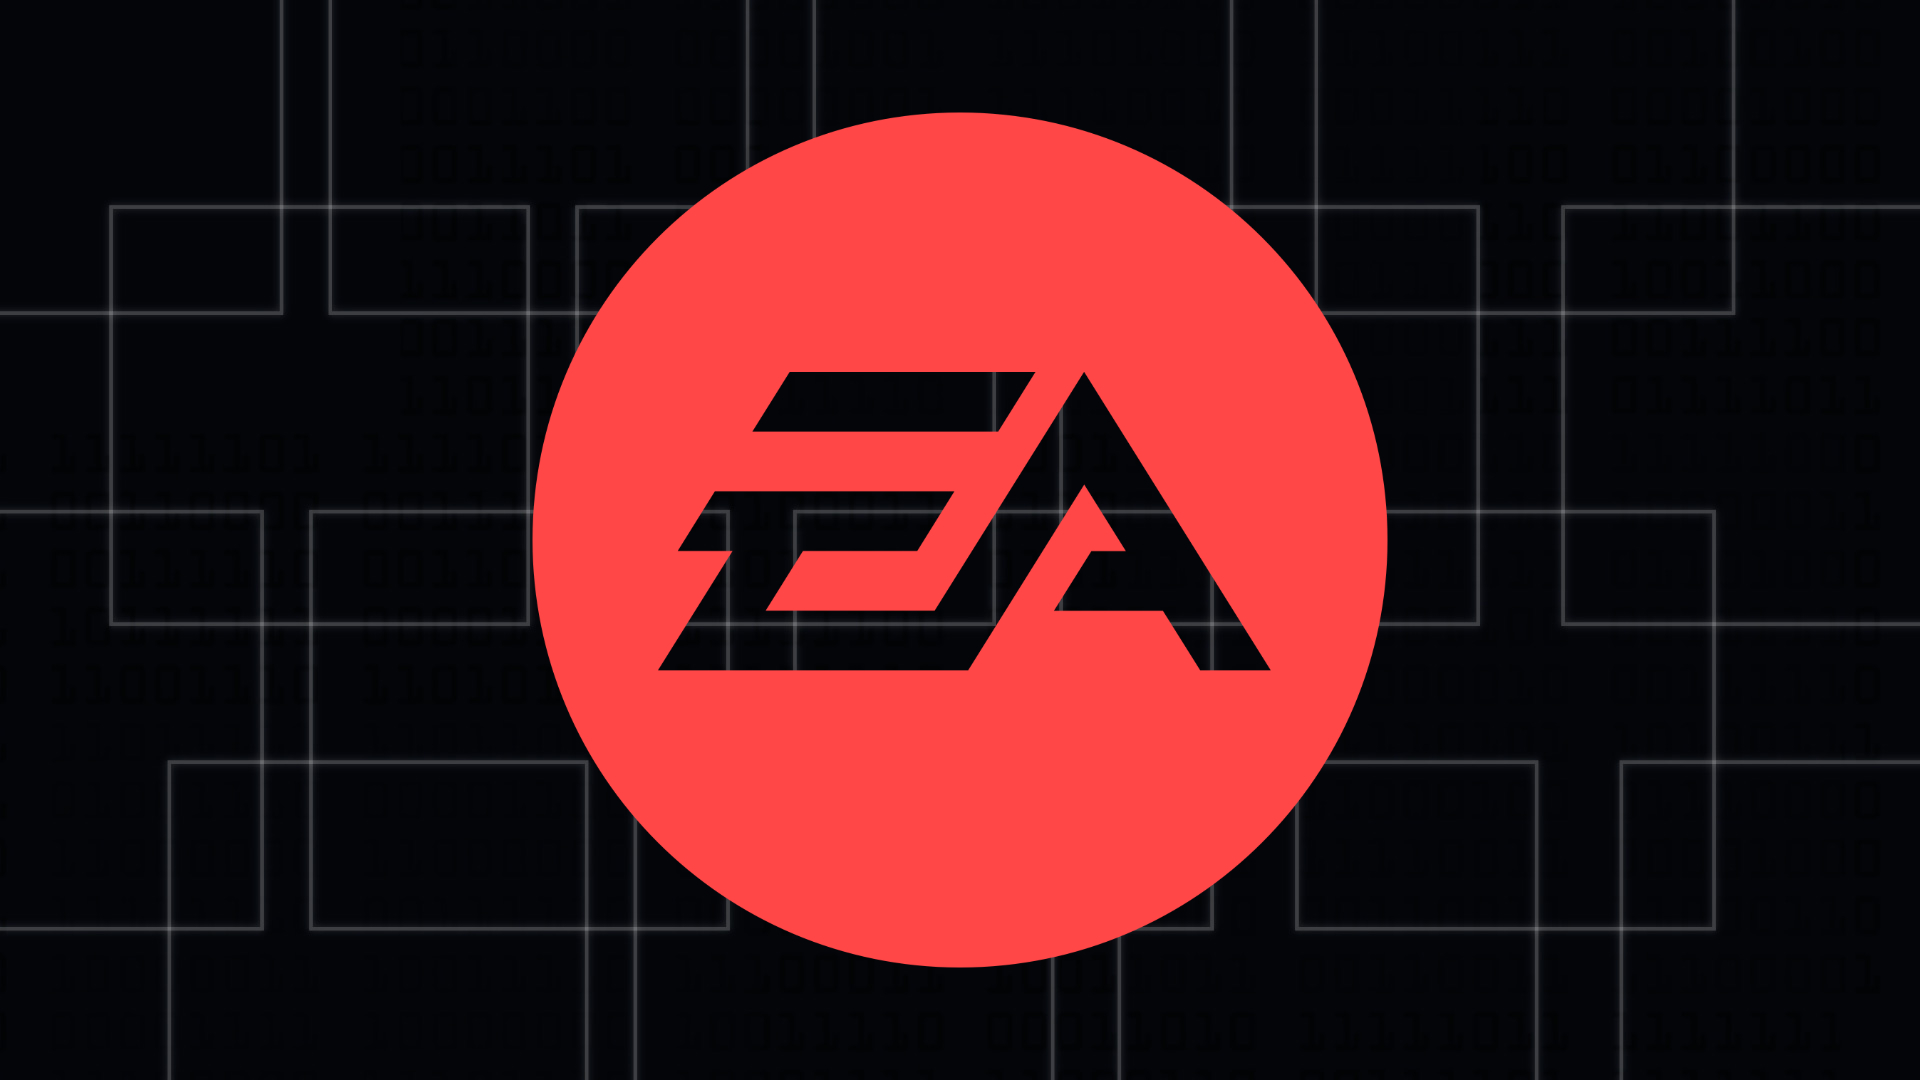 《戰地風雲2042》第六賽季大獲成功 EA表示將追加投資